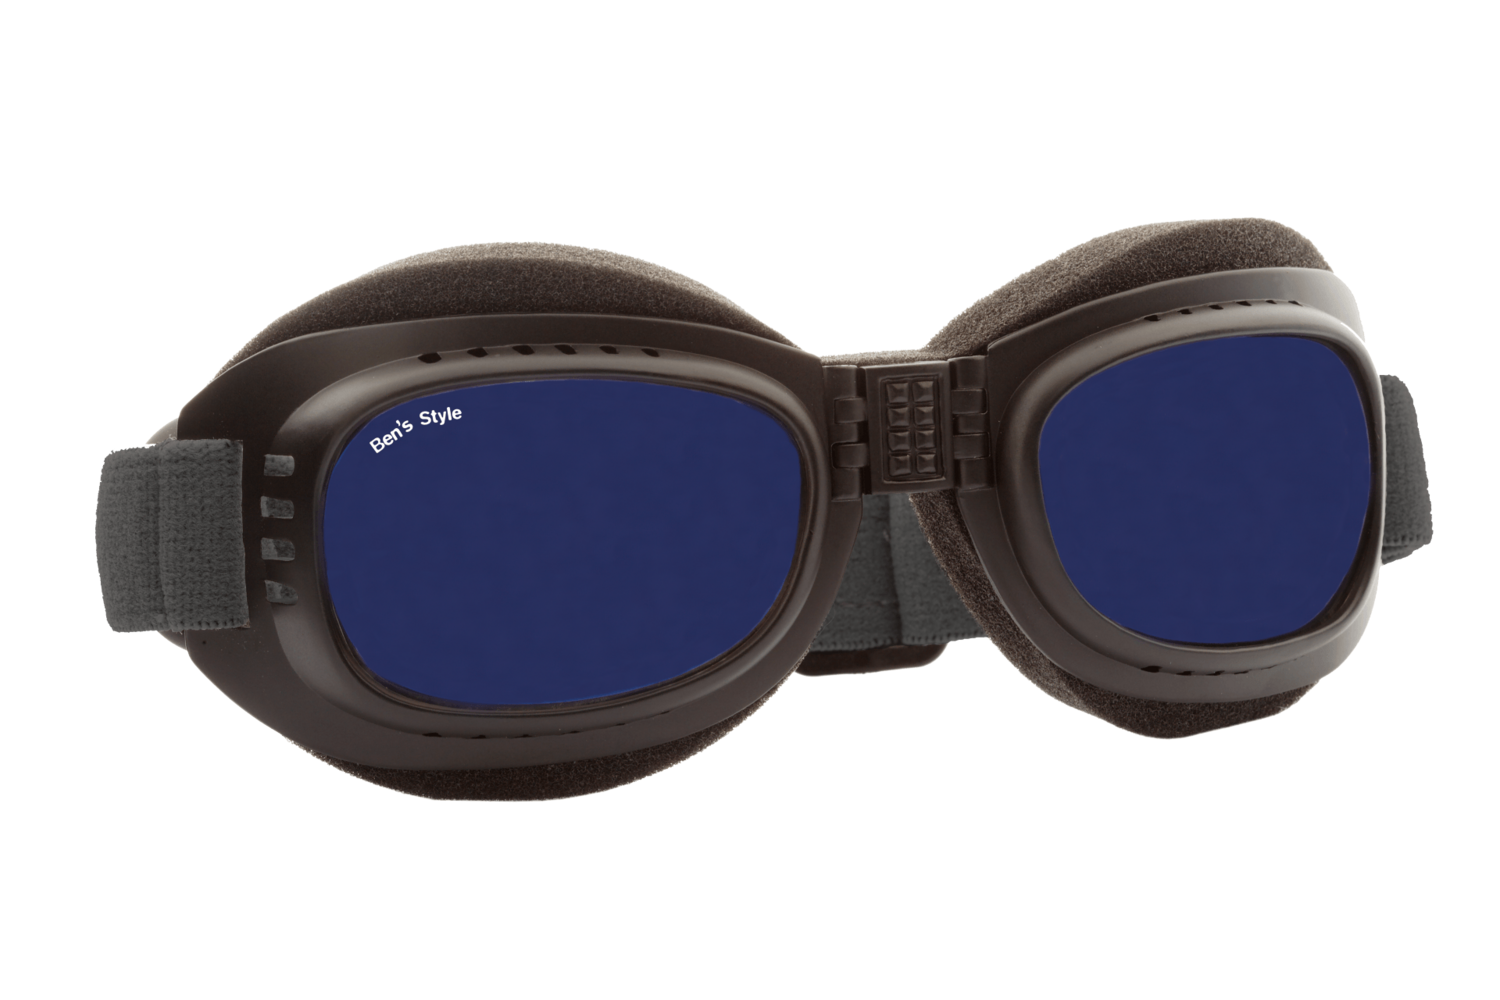 Cool II M -
Hundeschutzbrille Größe M
- Fassung: Schwarz, Gläser: Blau
Größe/Gesamtgewicht: Länge: 16,5 cm, Breite: 4,7 cm / 44 g